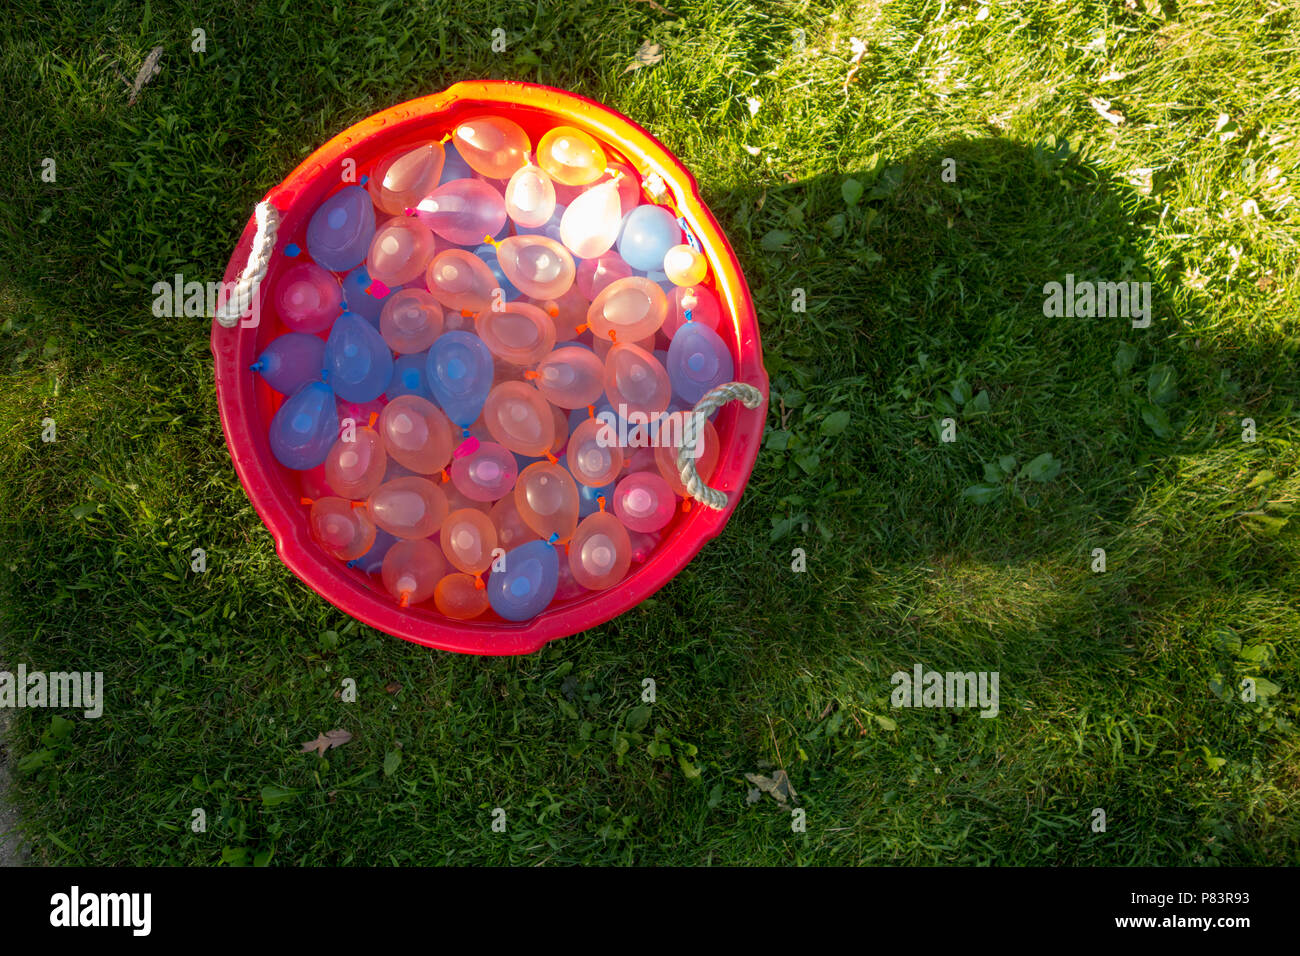 Eine Wanne voller Wasser Ballons bereit für den Sommer Spaß Stockfoto